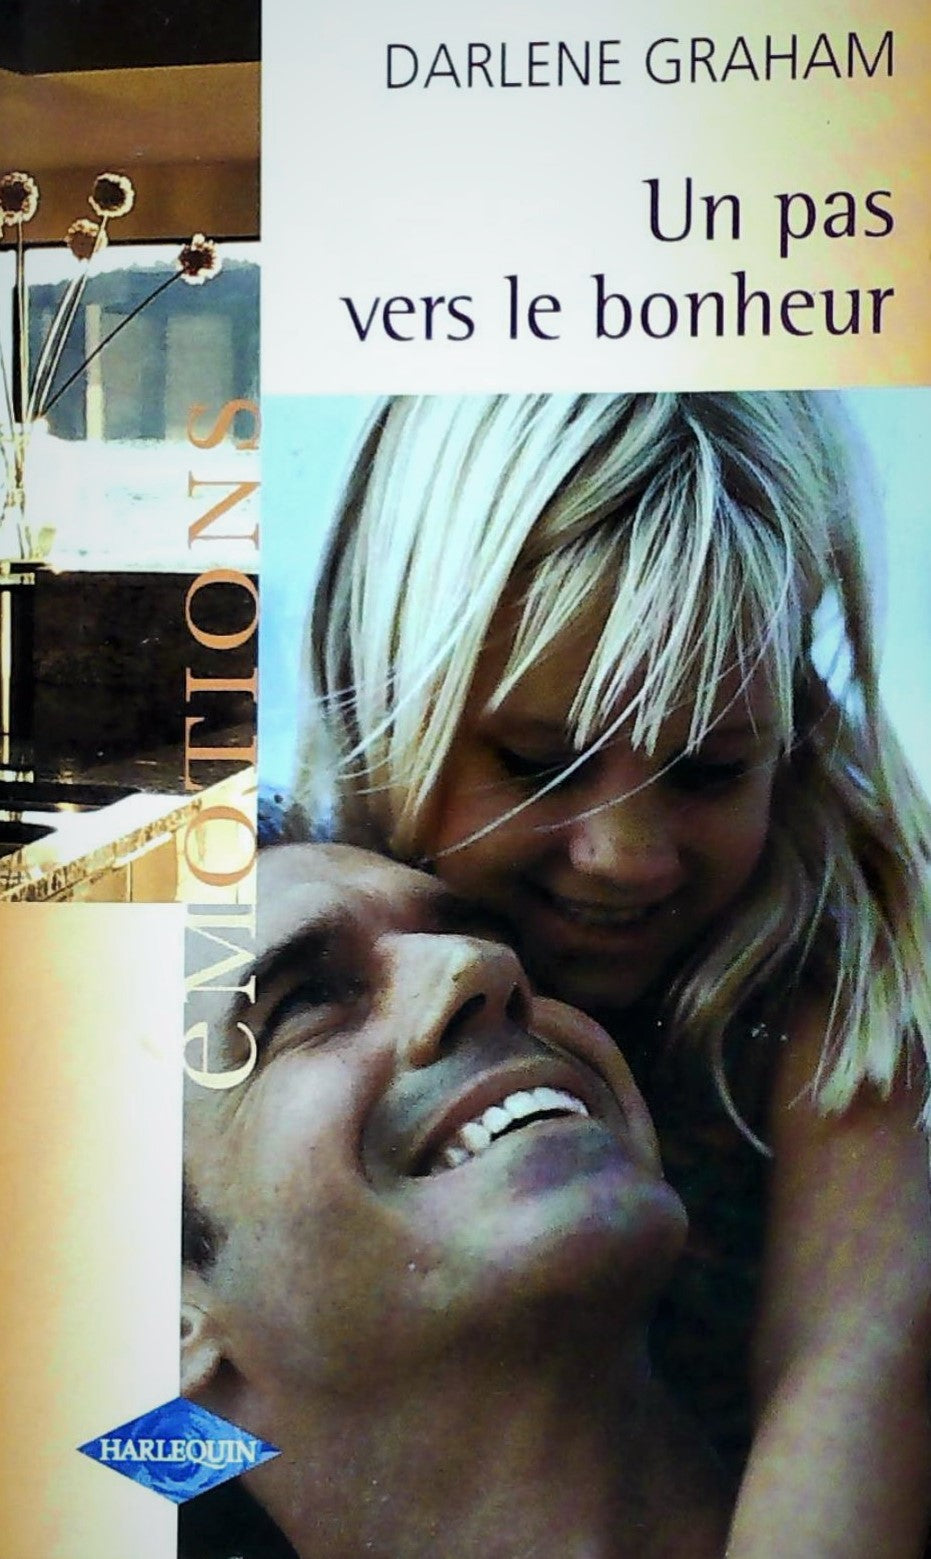 Livre ISBN 0373420706 Émotions (Harlequin) # 568 : Un pas vers le bonheur (Darlene Graham)